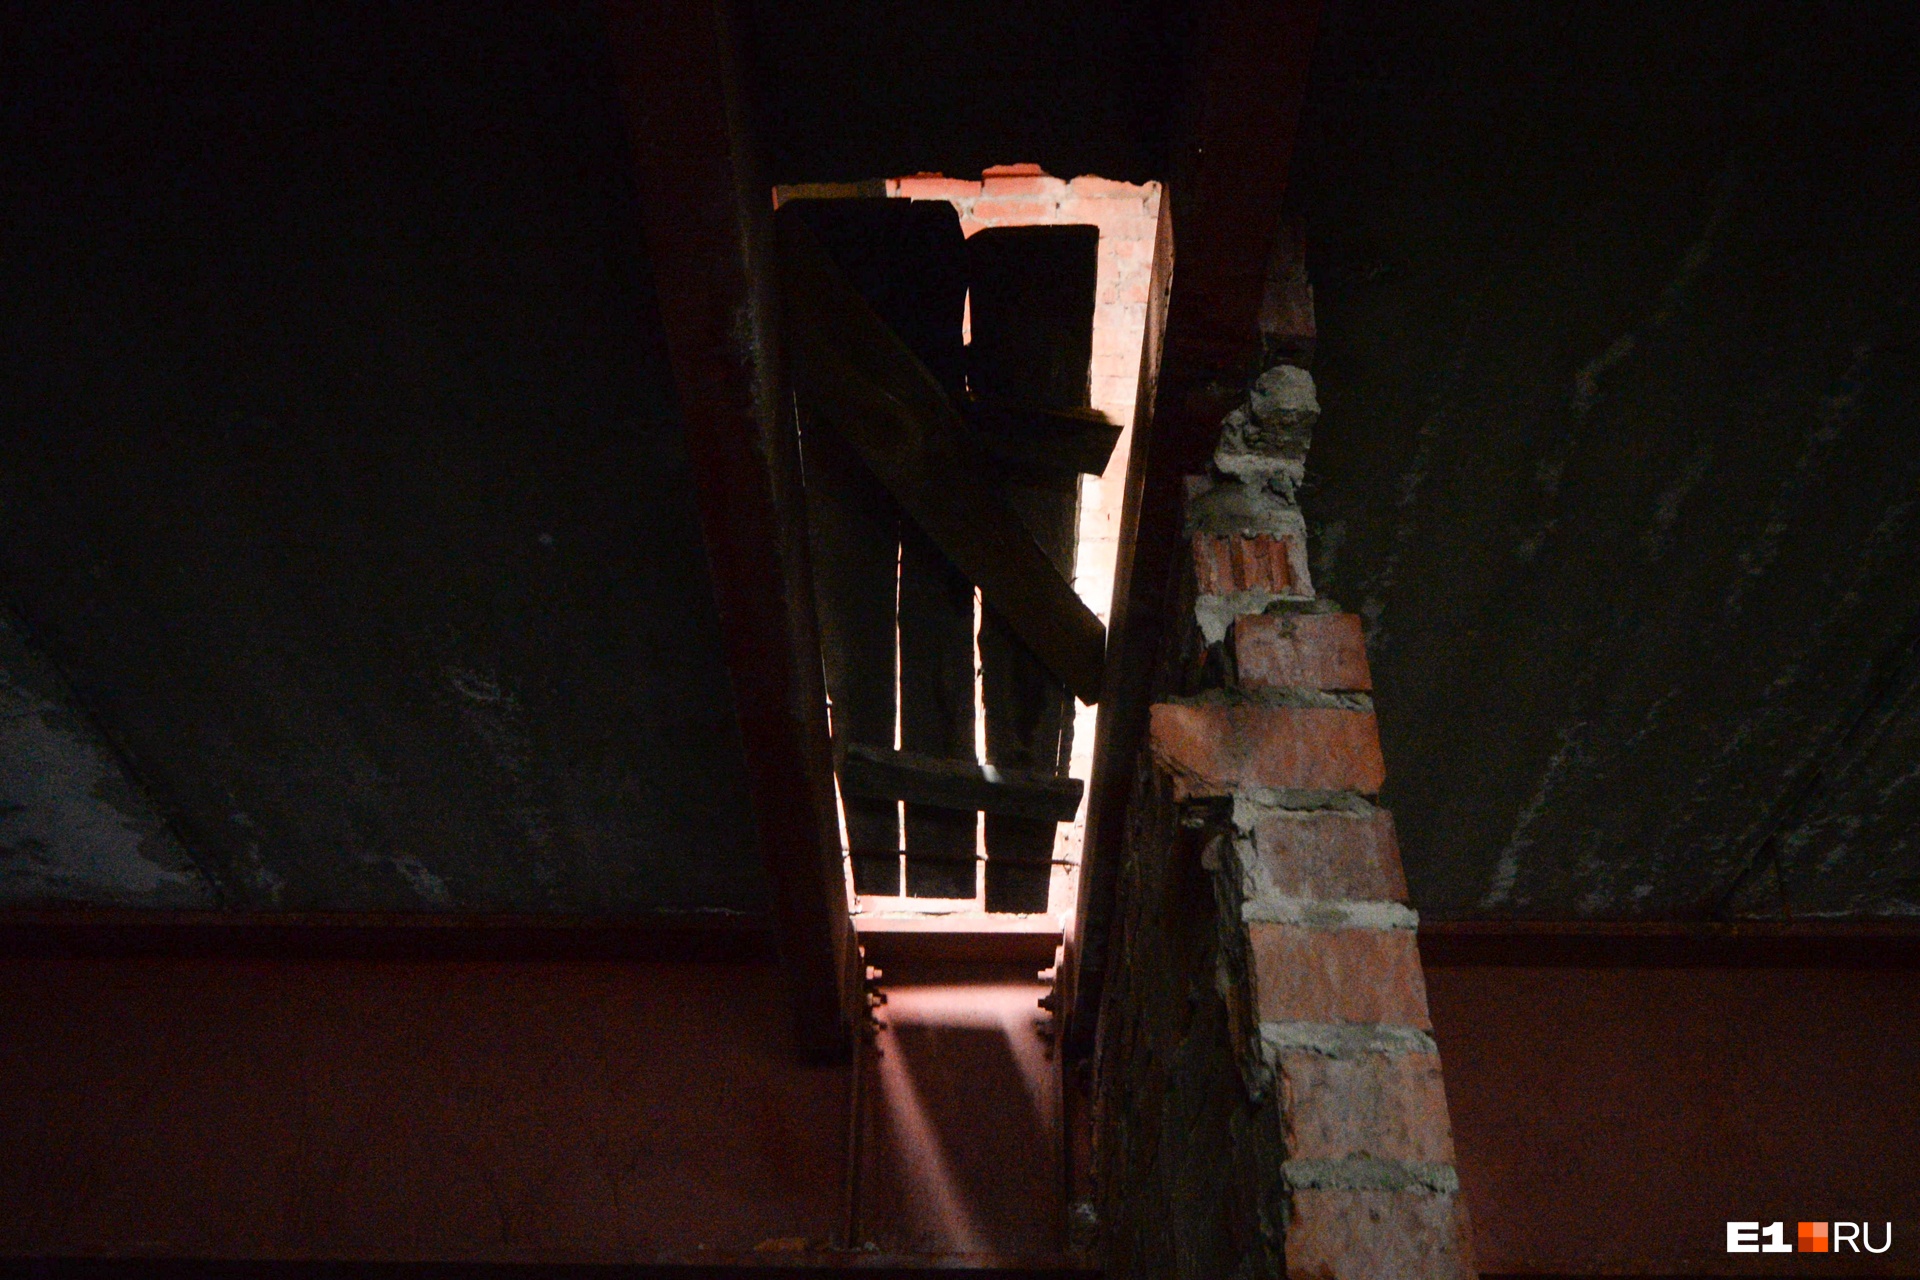 Те самые деревянные перекрытия в потолке, через которые капает вода. Они есть на каждом этаже